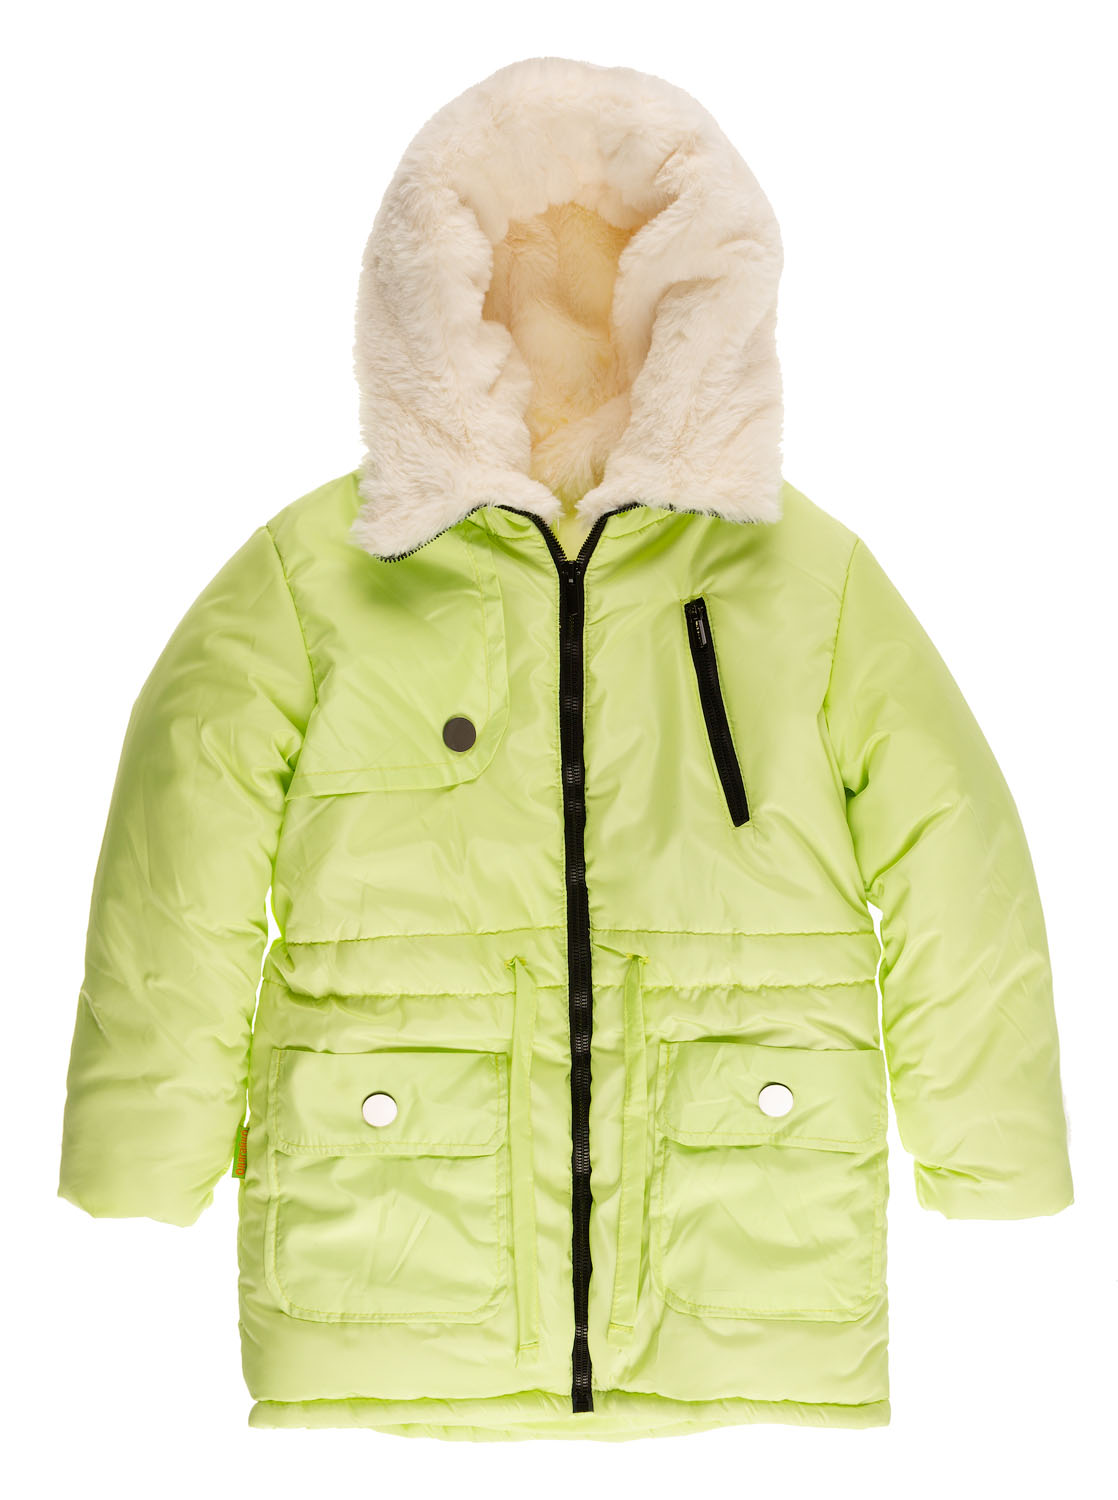 Куртка подовжена зимова для дівчинки Одягайко салатова 20026О - ціна